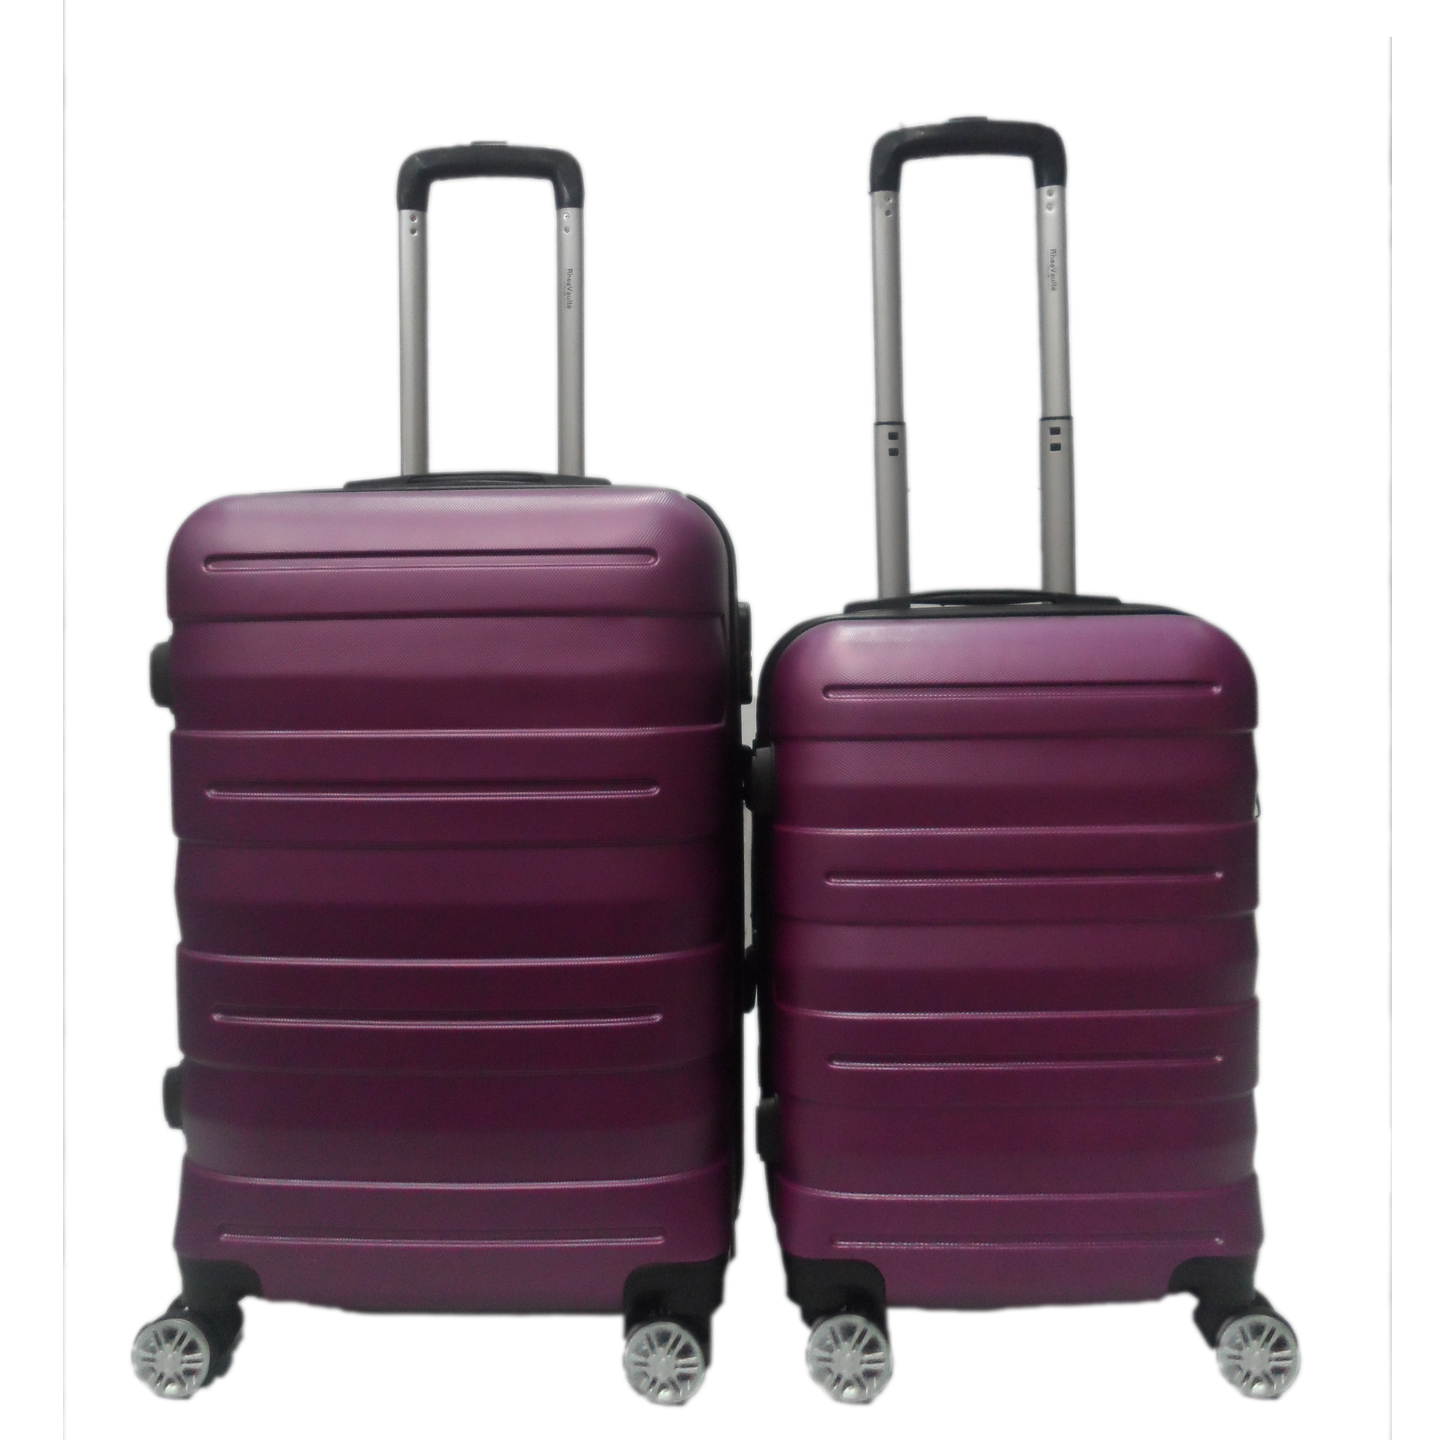 RV-131 Elegant Hard Box Luggage - Purple 20 inch and 24 inch